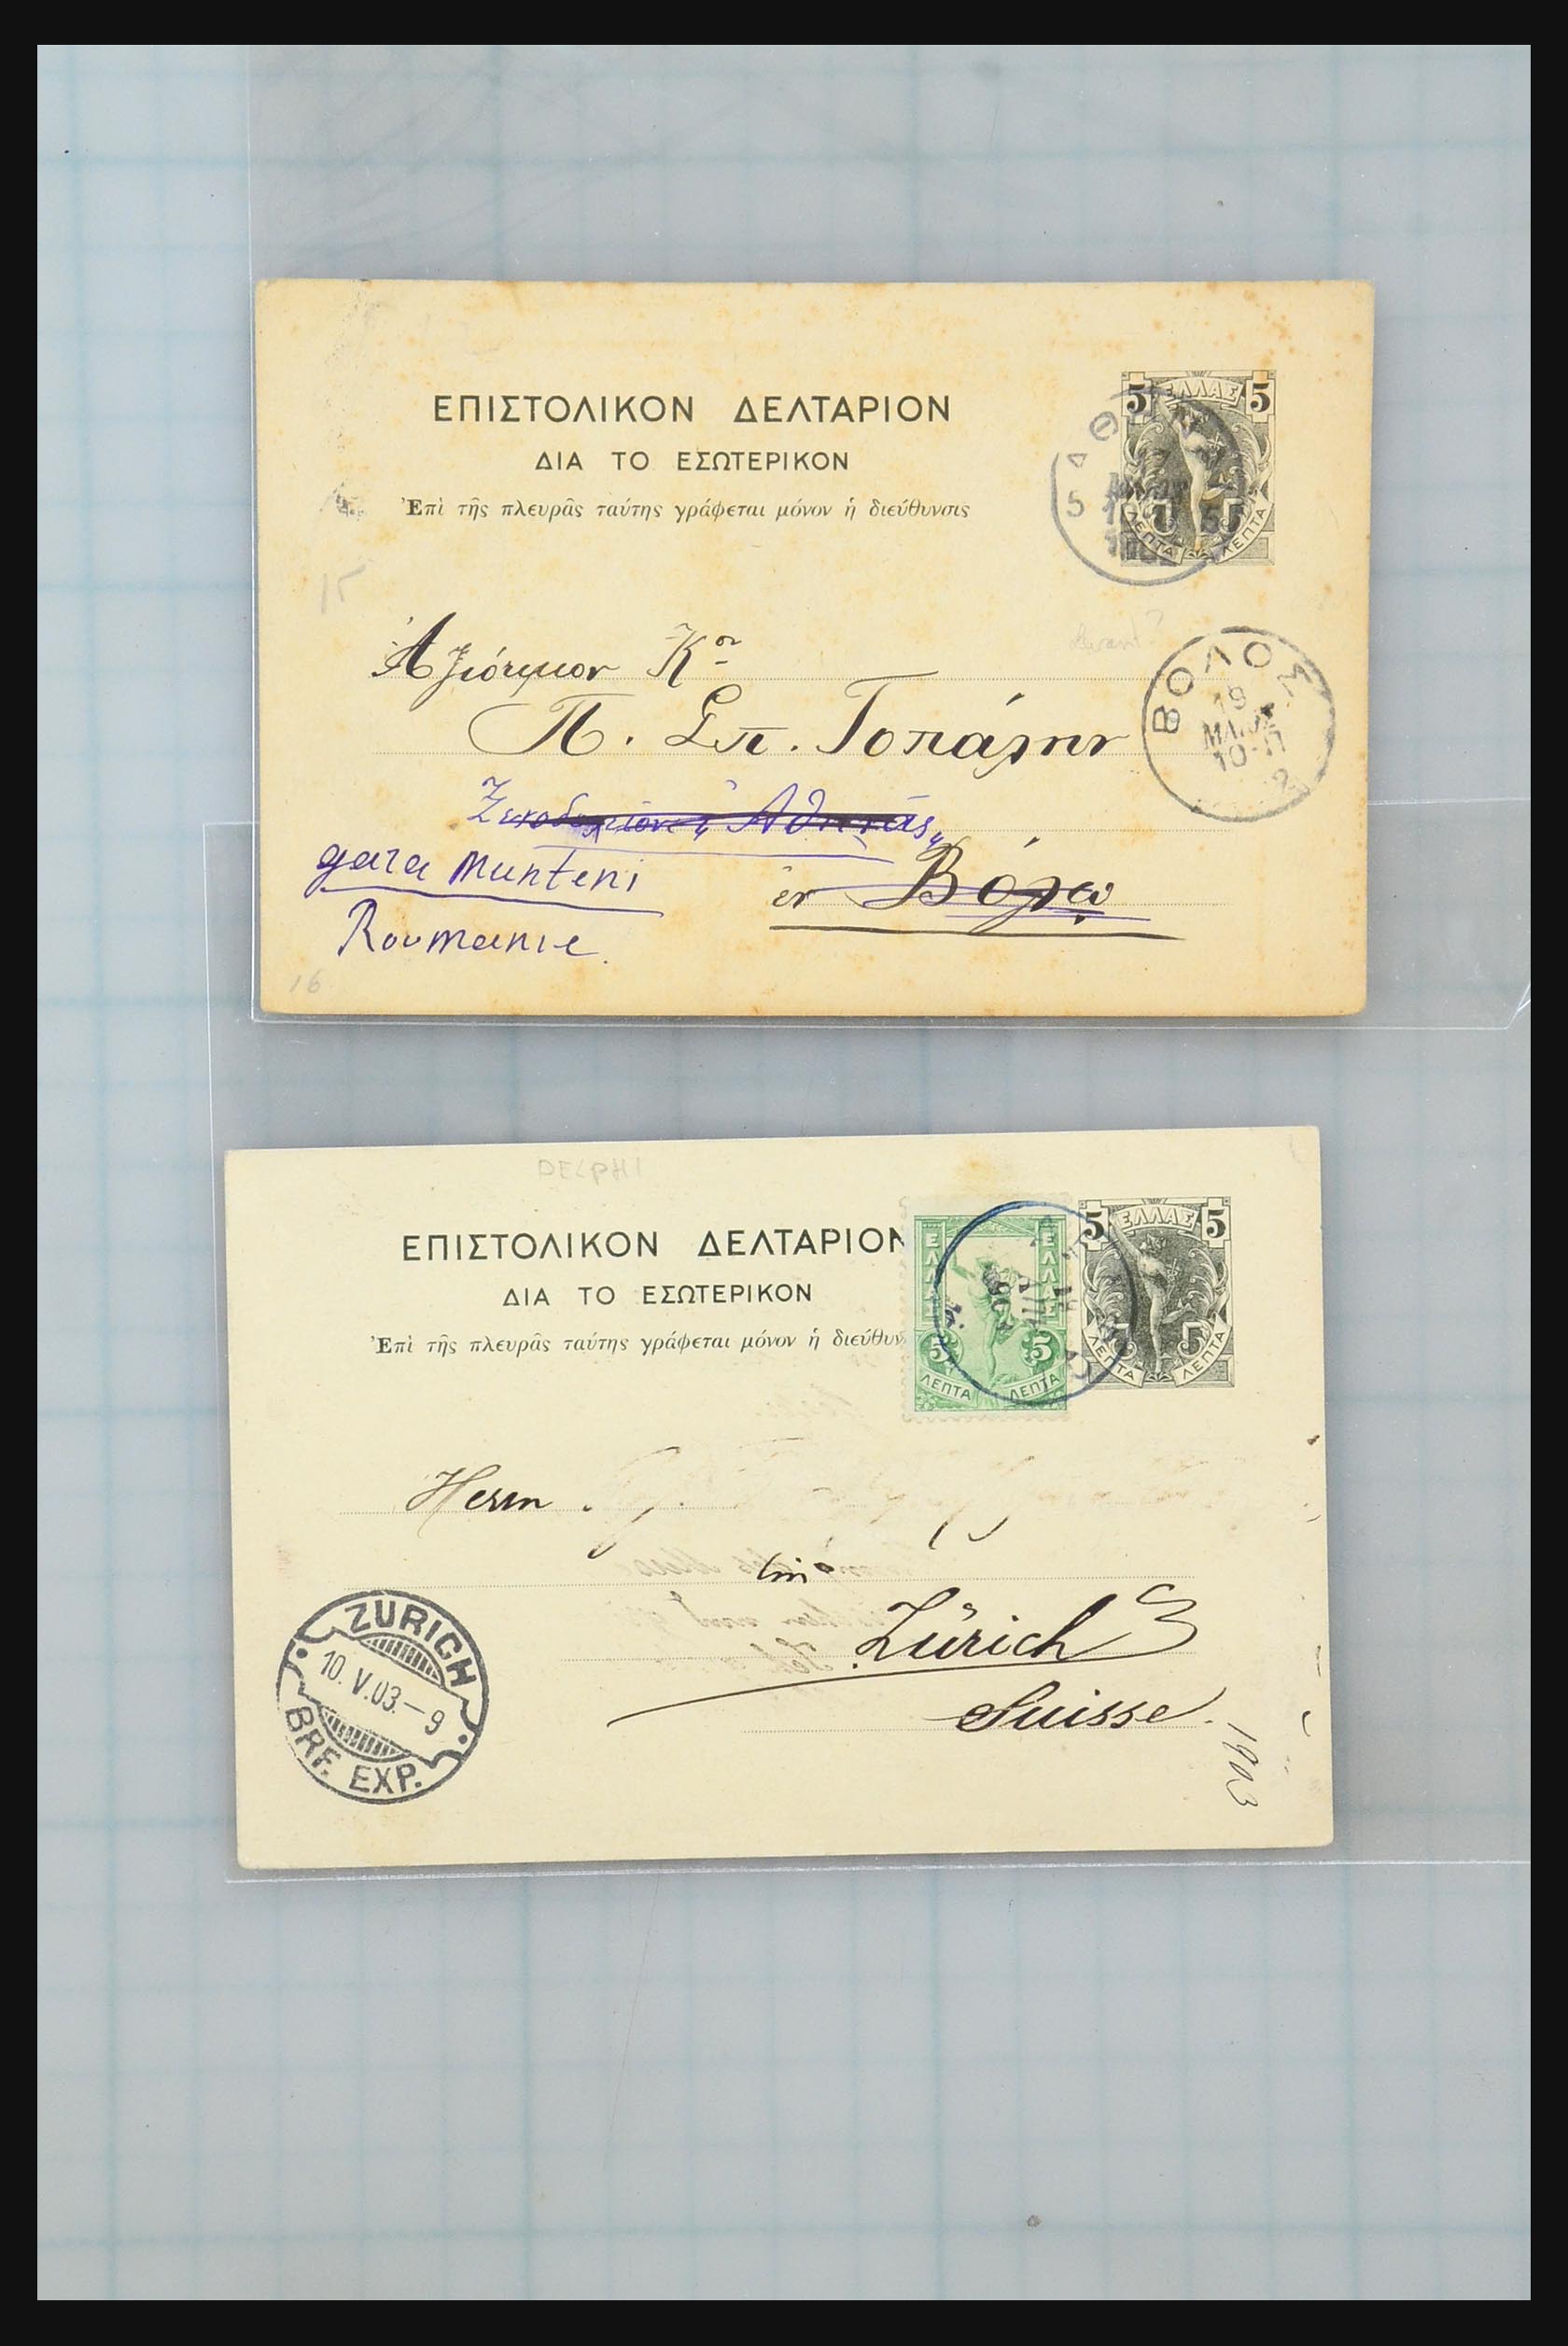 31358 029 - 31358 Portugal/Luxemburg/Griekenland brieven 1880-1960.